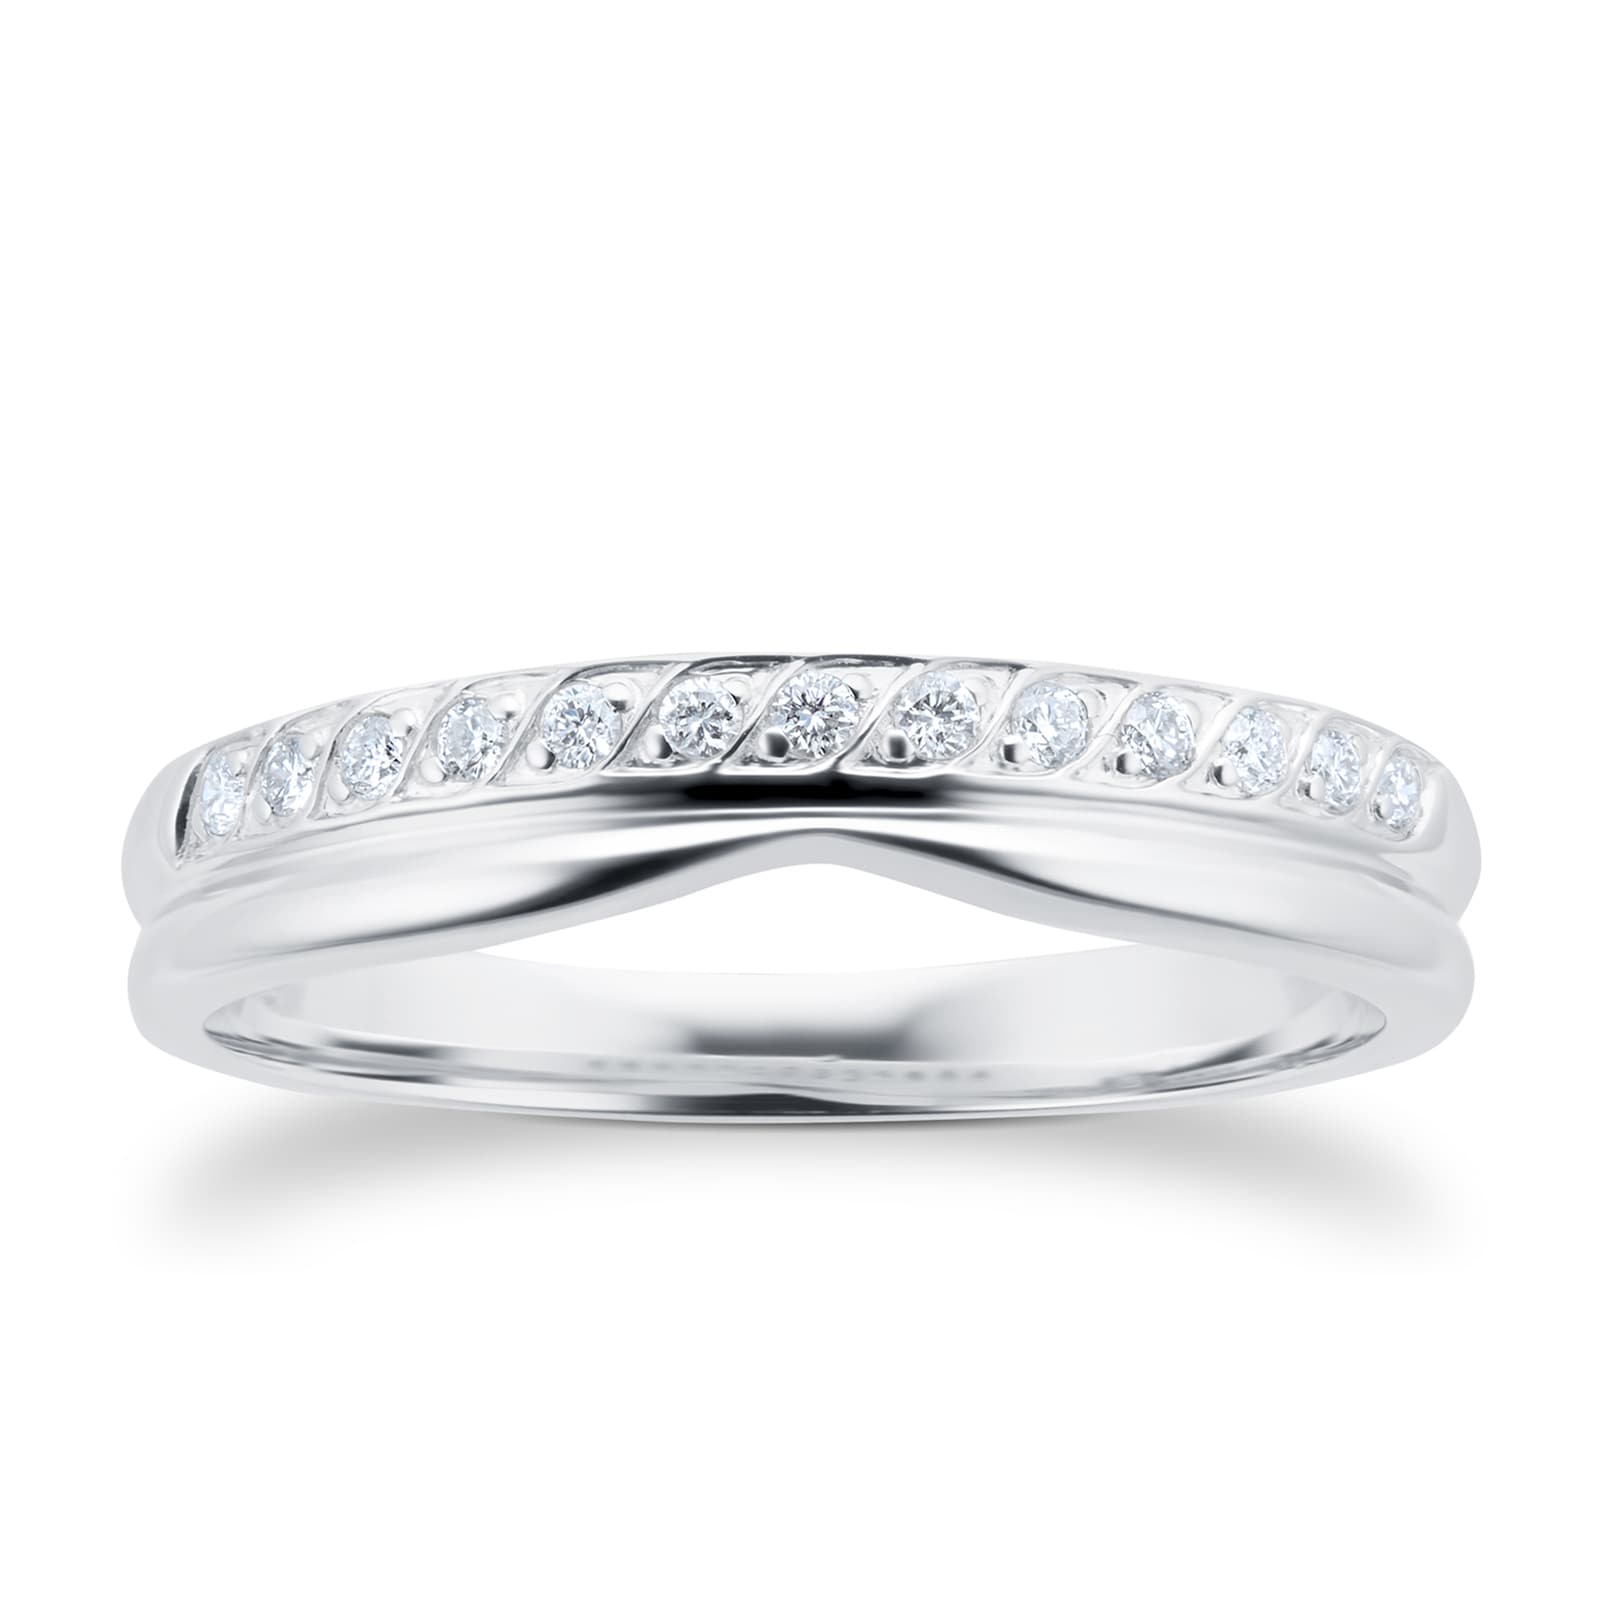 Ladies 0.09 Total Carat Weight Diamond Wedding Ring In 9 Carat White Gold. - Ring Size F